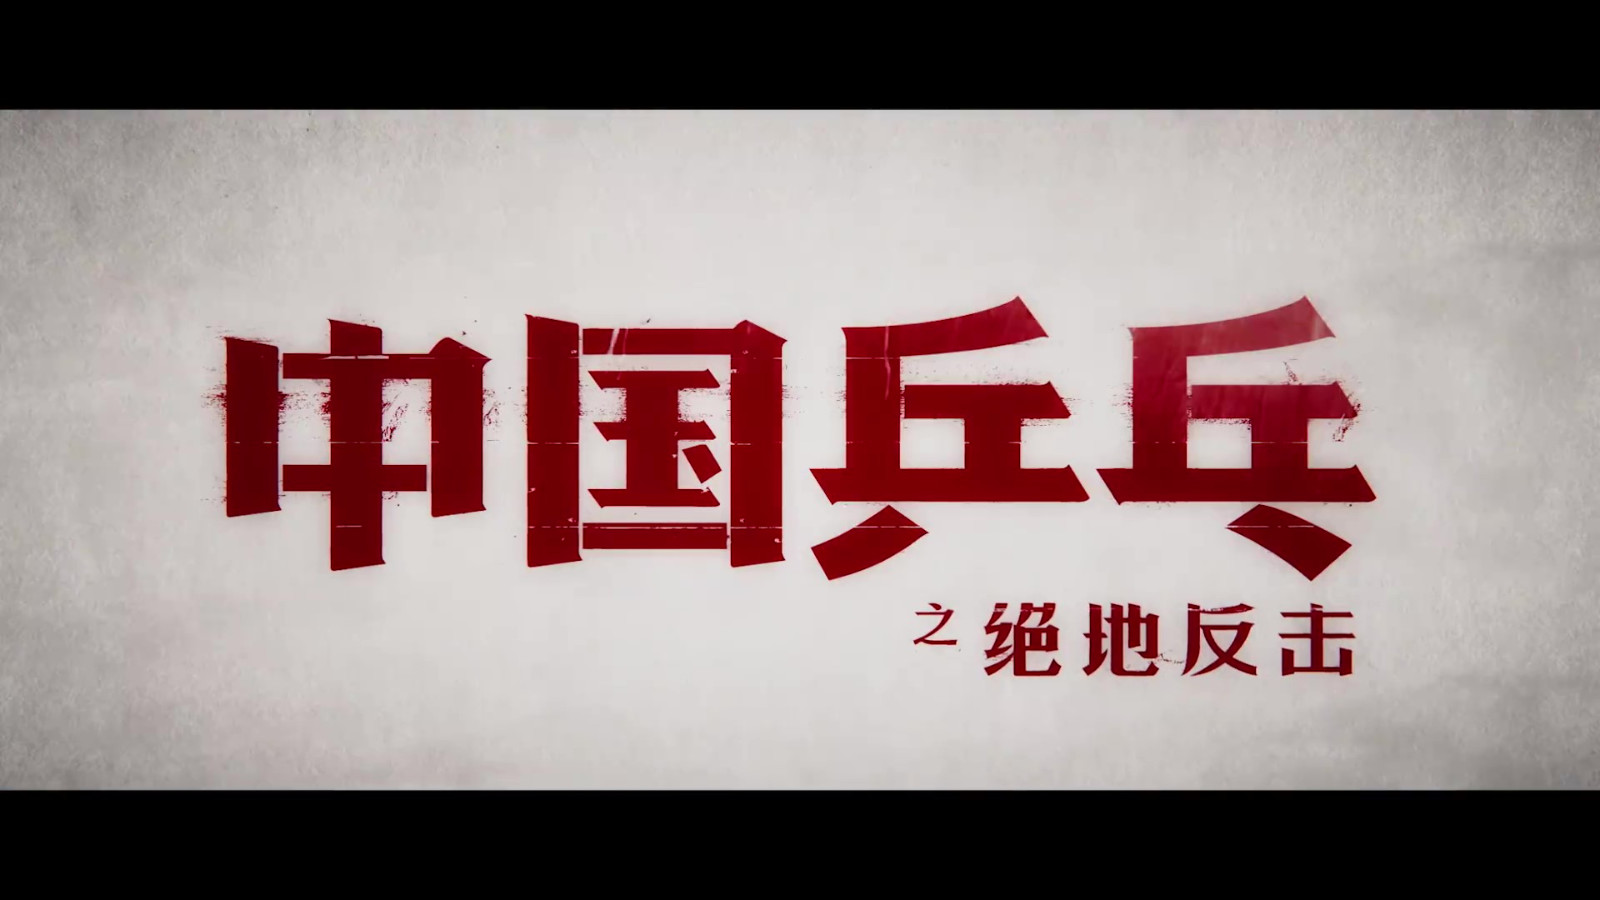 《中国乒乓之绝地反击》定档预告及海报 2月17日全国正式上映